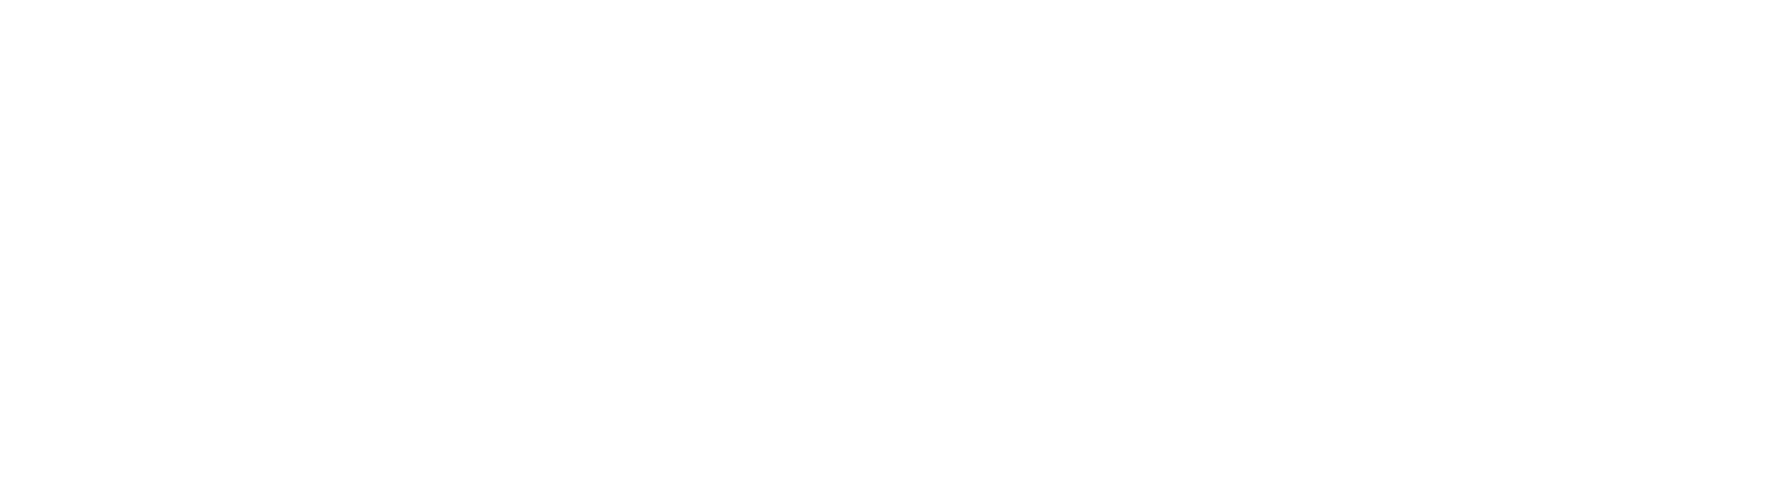 Rockoli & Röschen